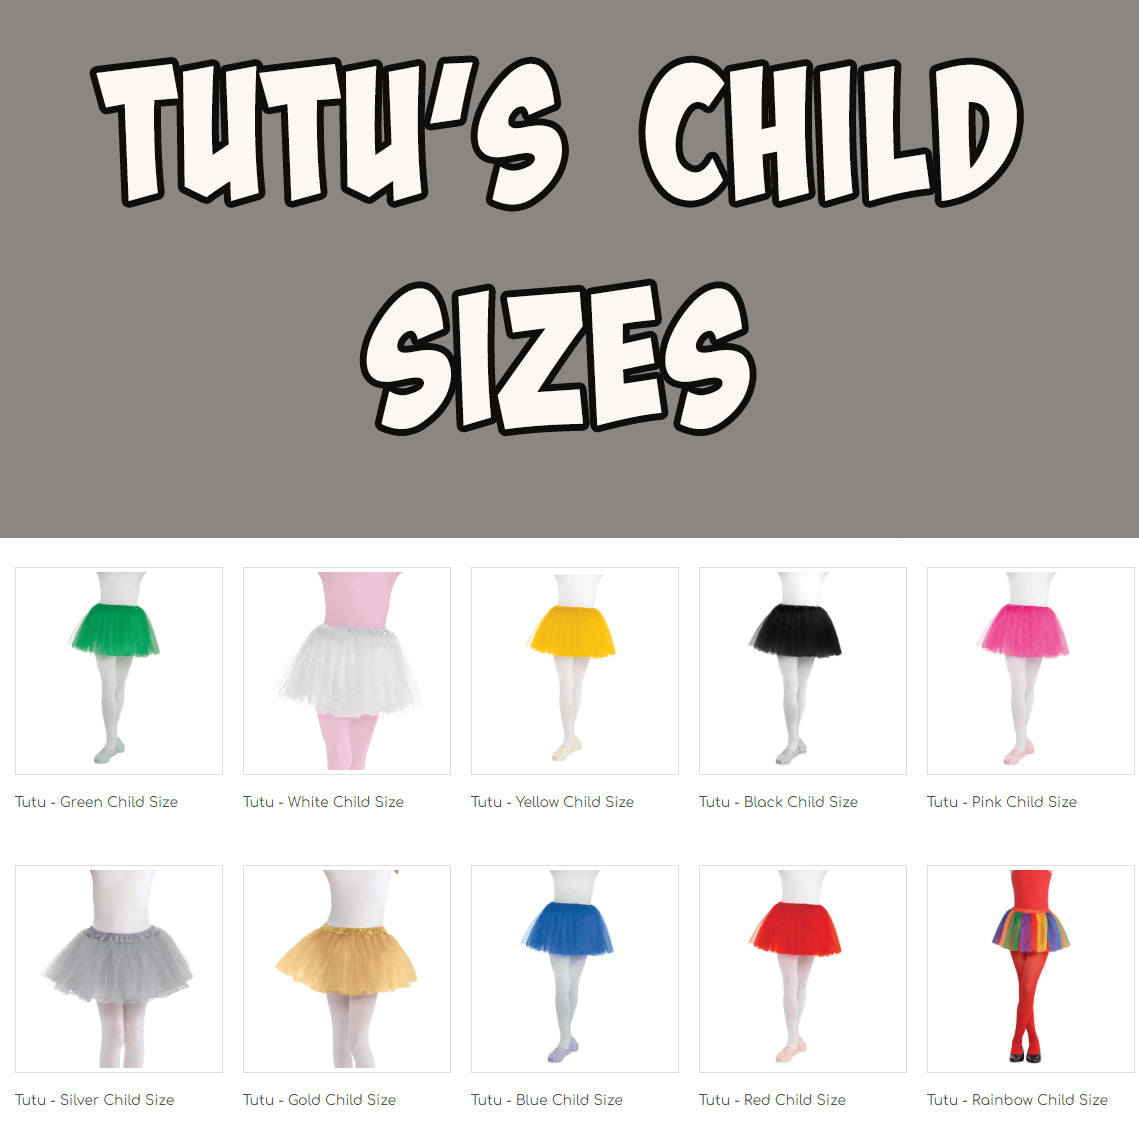 Tutu Child Size